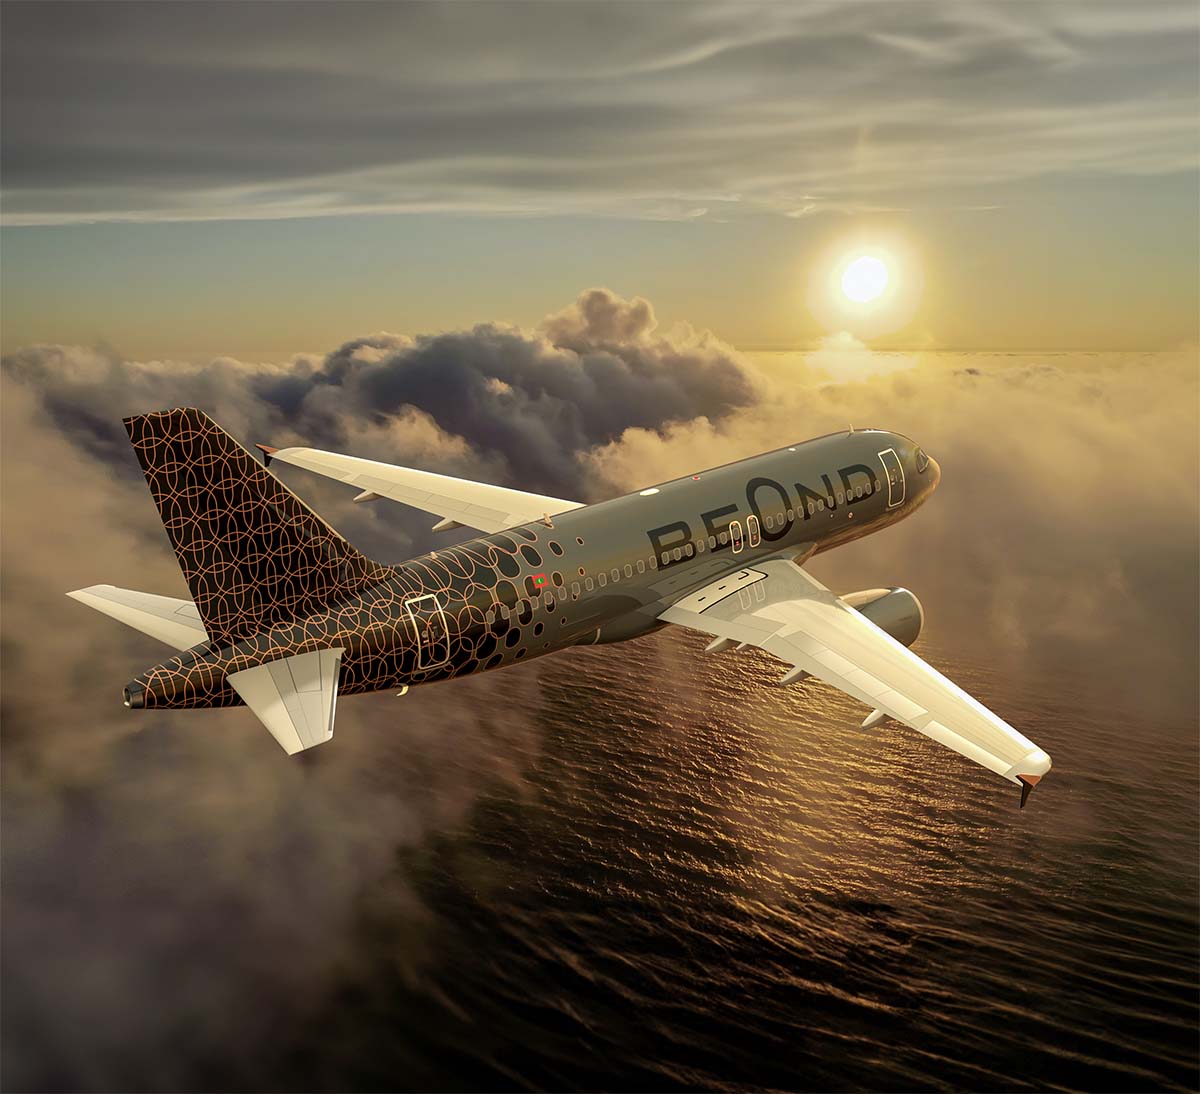 Beond-Aircraft.jpg